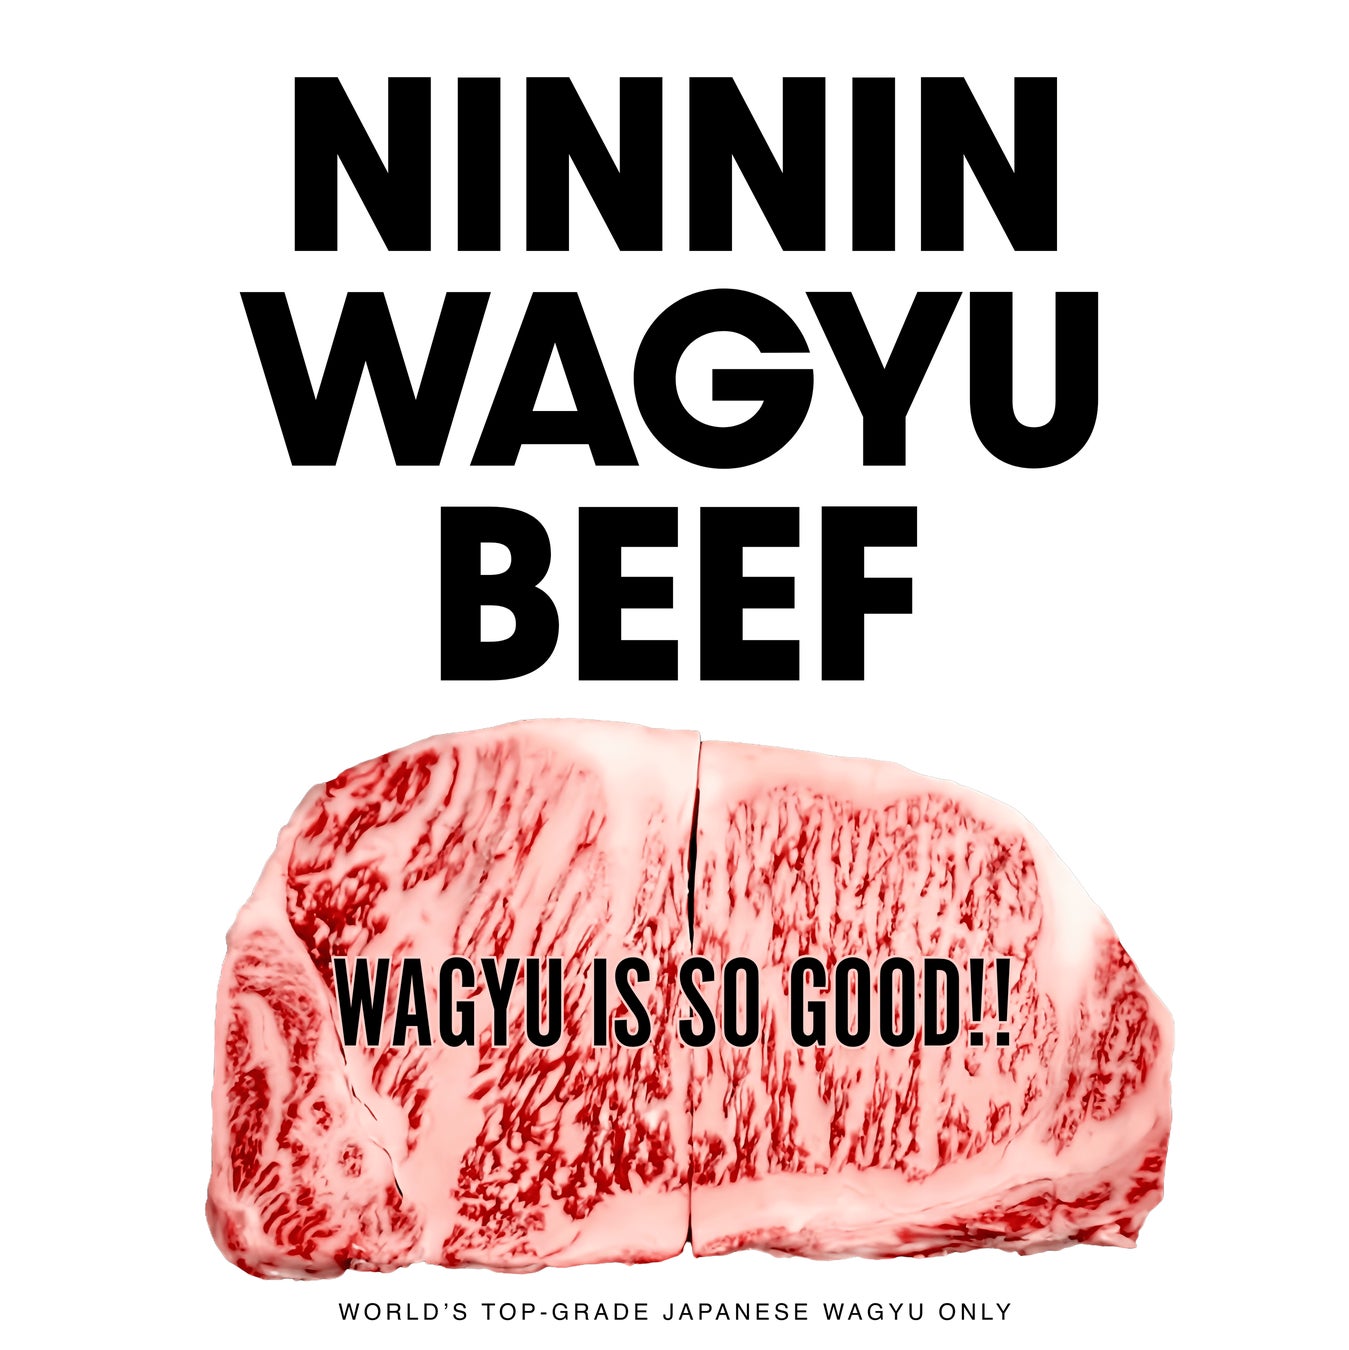 キャンプ女子株式会社、和牛の国際取引をサポートする新WEBサイト「WAGYUNINJA」を公開